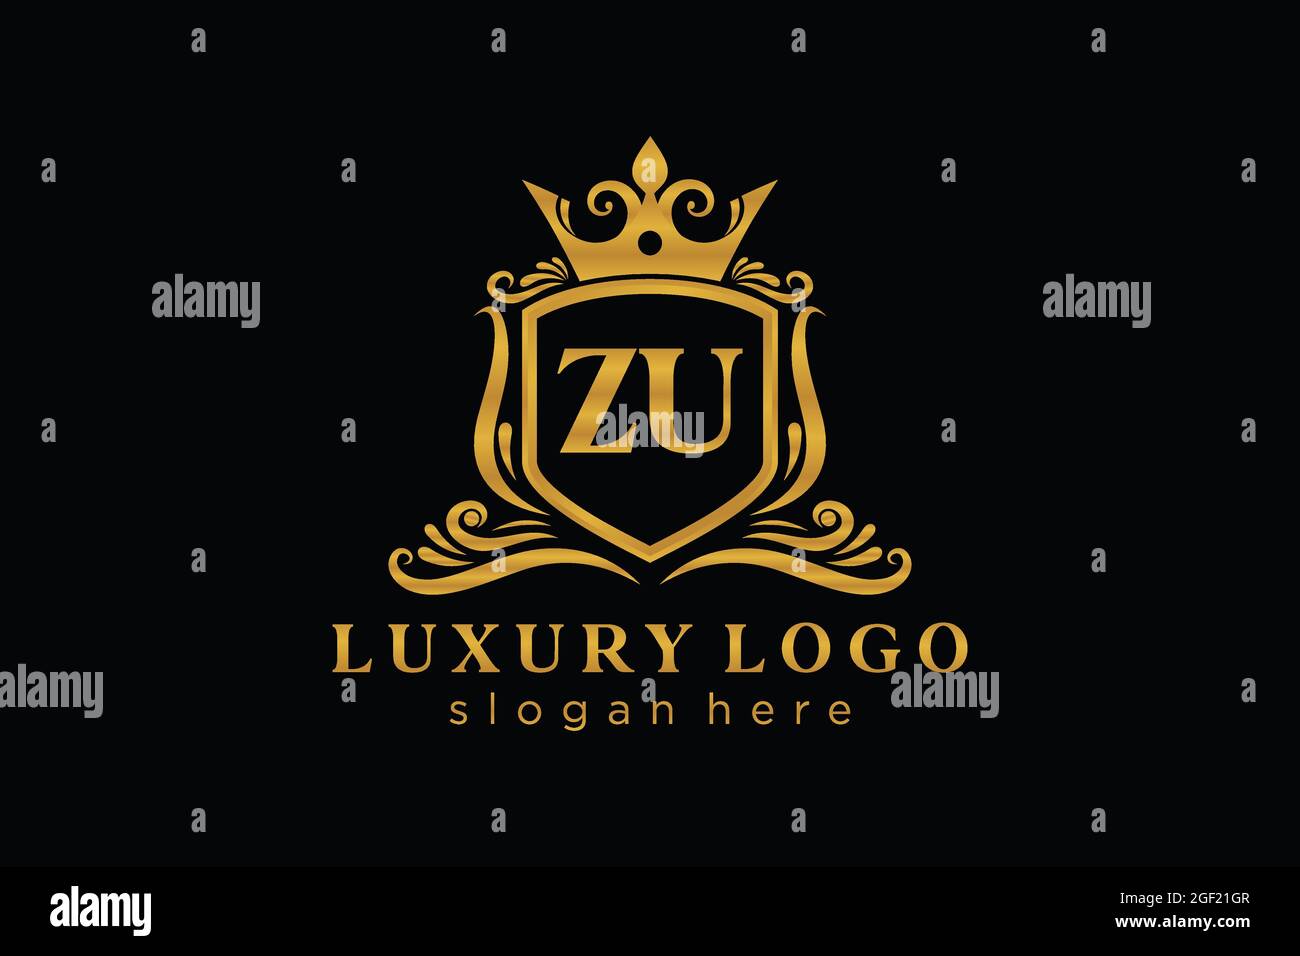 ZU Royal Luxury Logo Vorlage in Vektorgrafik für Restaurant, Royalty, Boutique, Cafe, Hotel, Wappentisch, Schmuck, Mode und andere Vektorgrafik. Stock Vektor